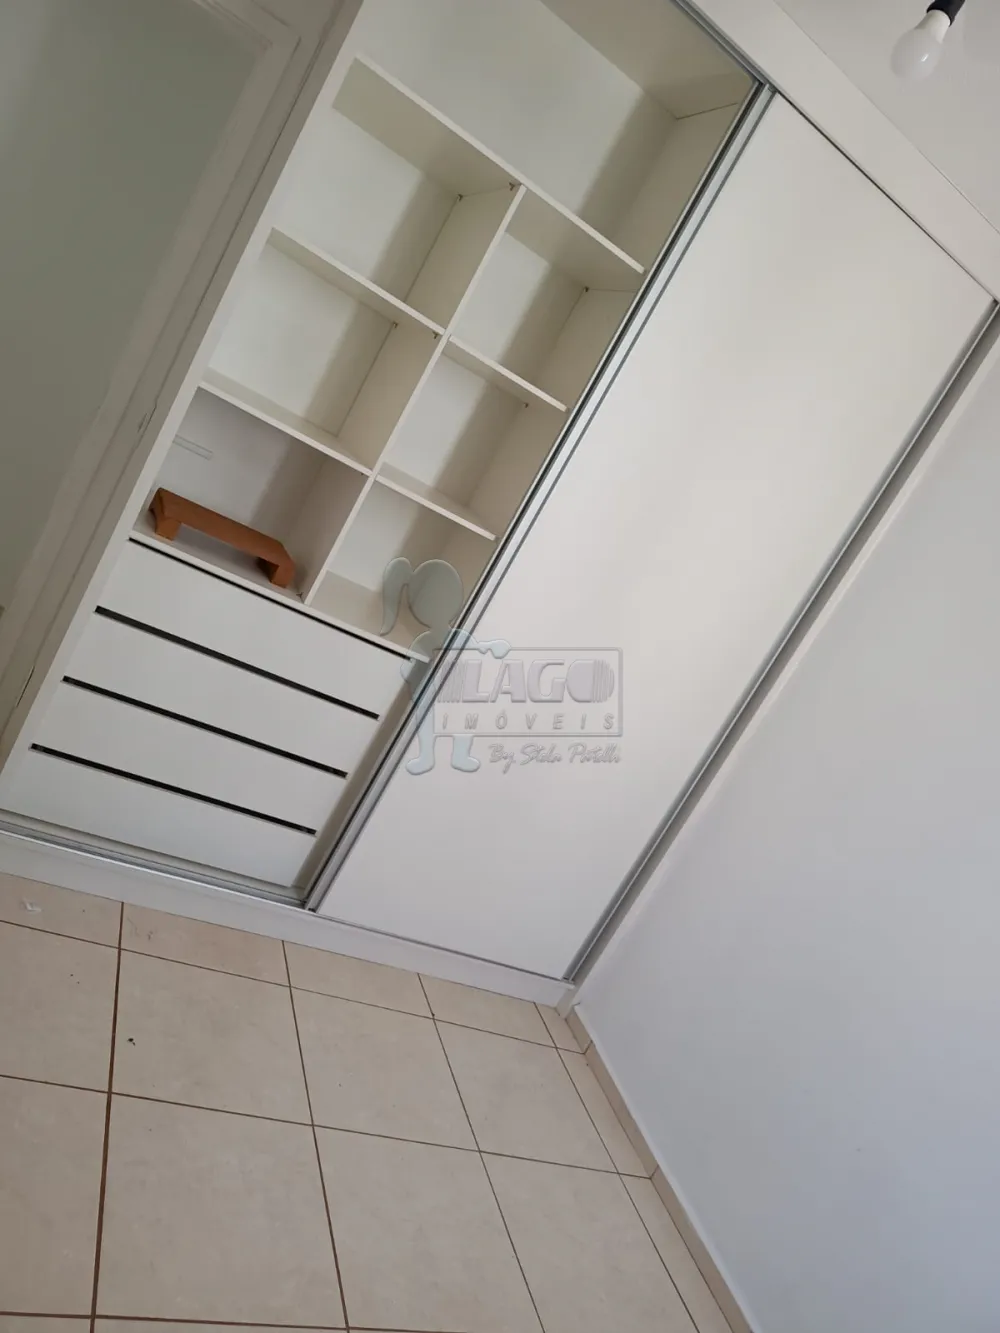 Comprar Apartamentos / Padrão em Ribeirão Preto R$ 192.000,00 - Foto 3